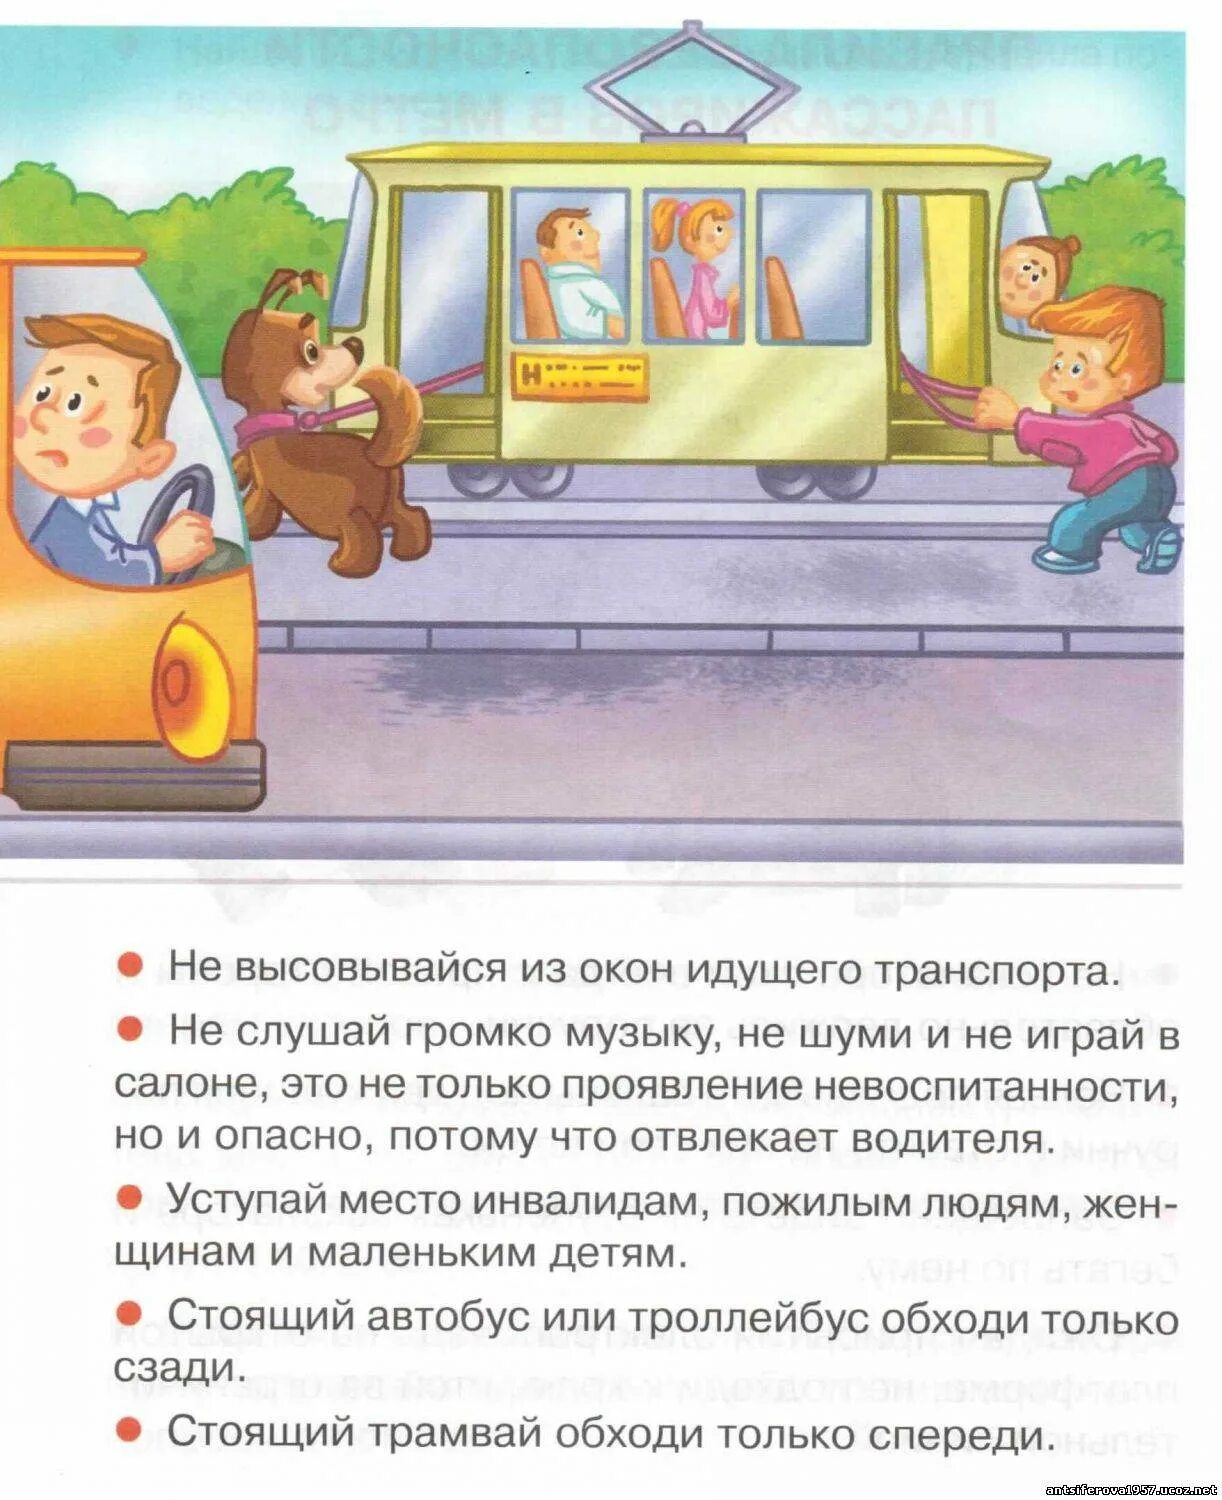 Правила поведения в общественном транспорте. Правила поведения пассажиров в общественном транспорте. Безопасность детей в общественном транспорте. Правила поведения пассажиро.